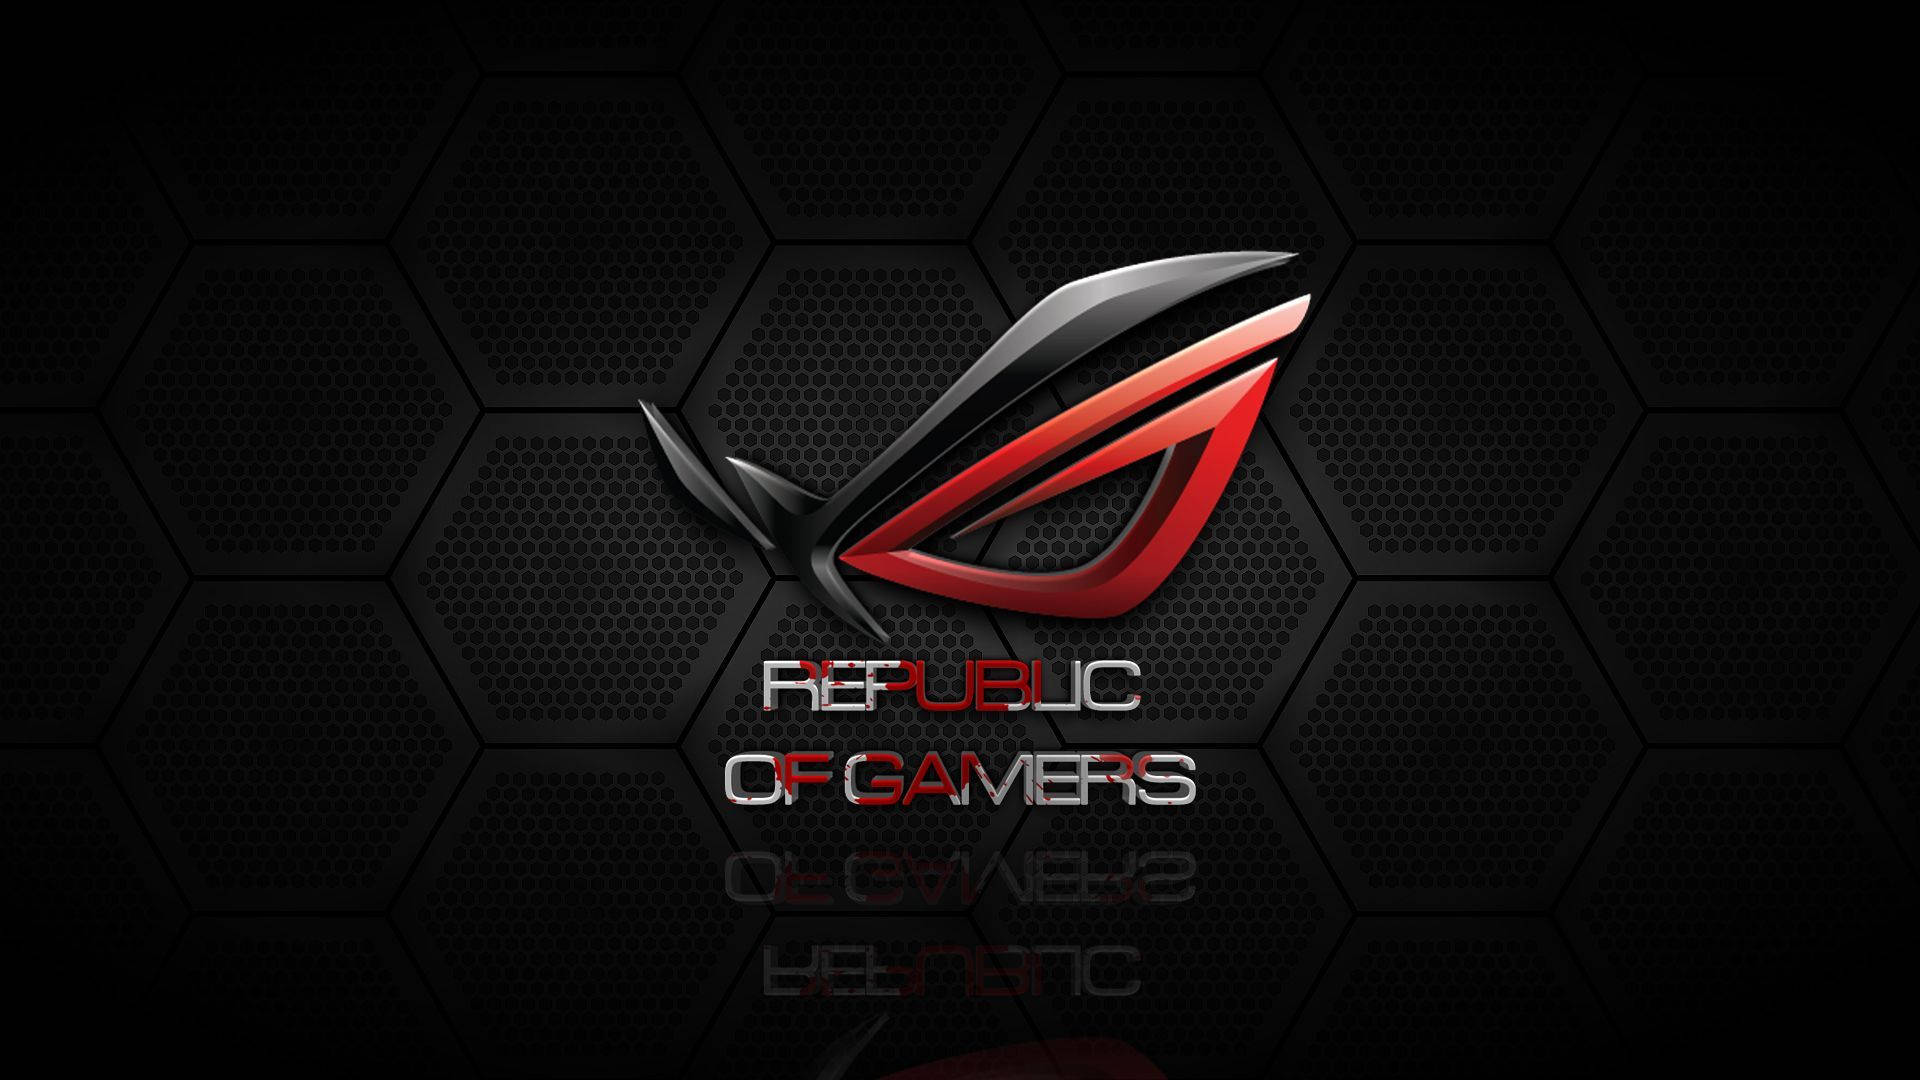 Rog Republic Of Gamers Wallpaper